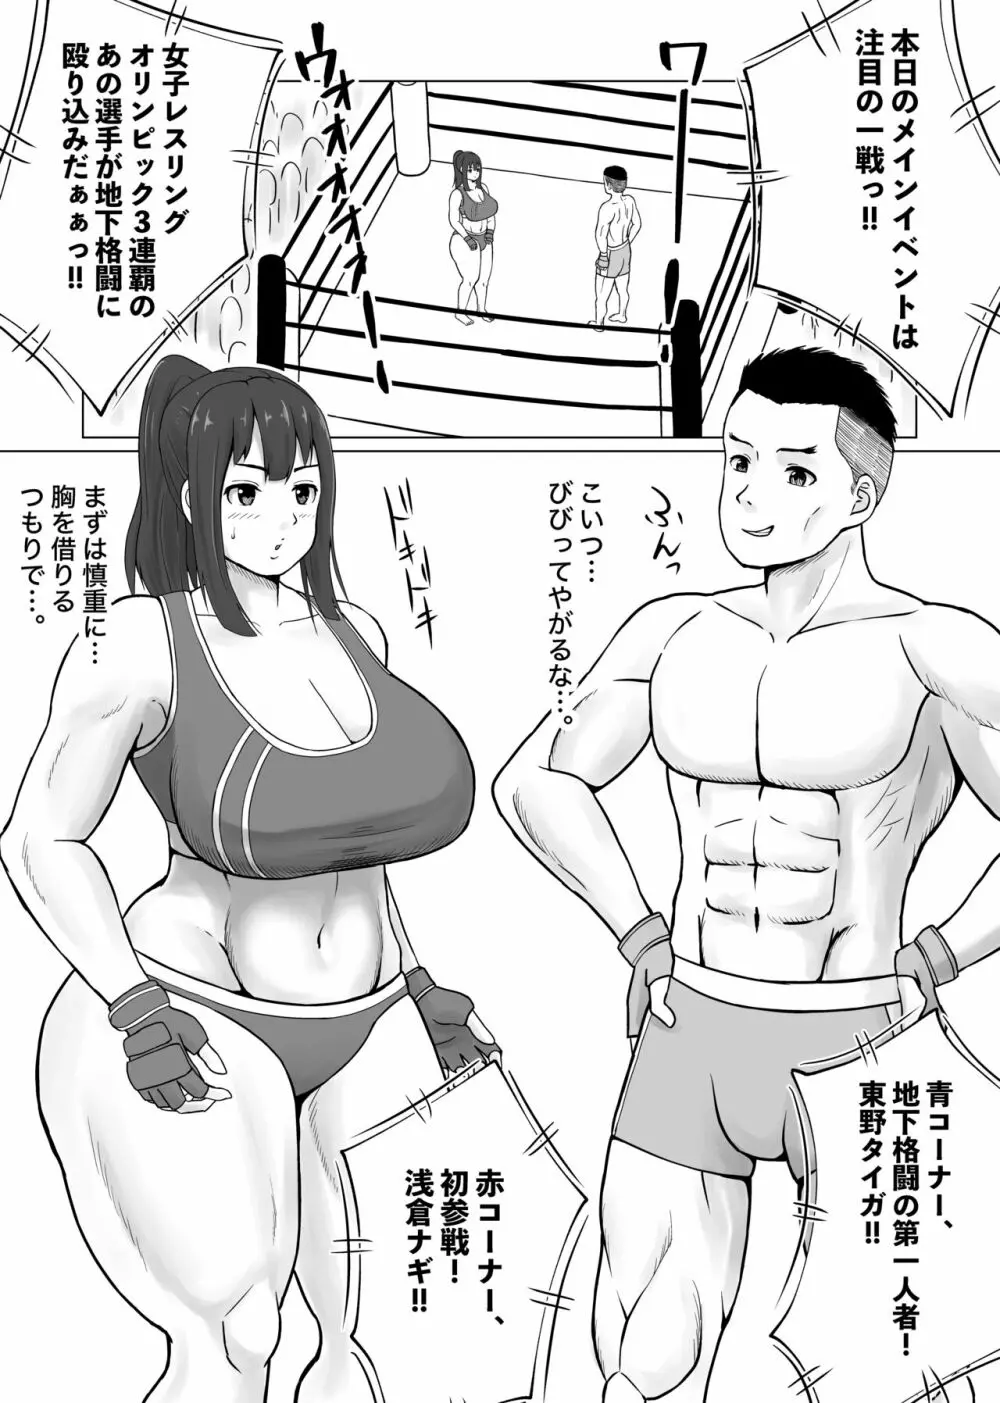 ミックスファイト地下格闘〜浅倉ナギ編〜 2ページ